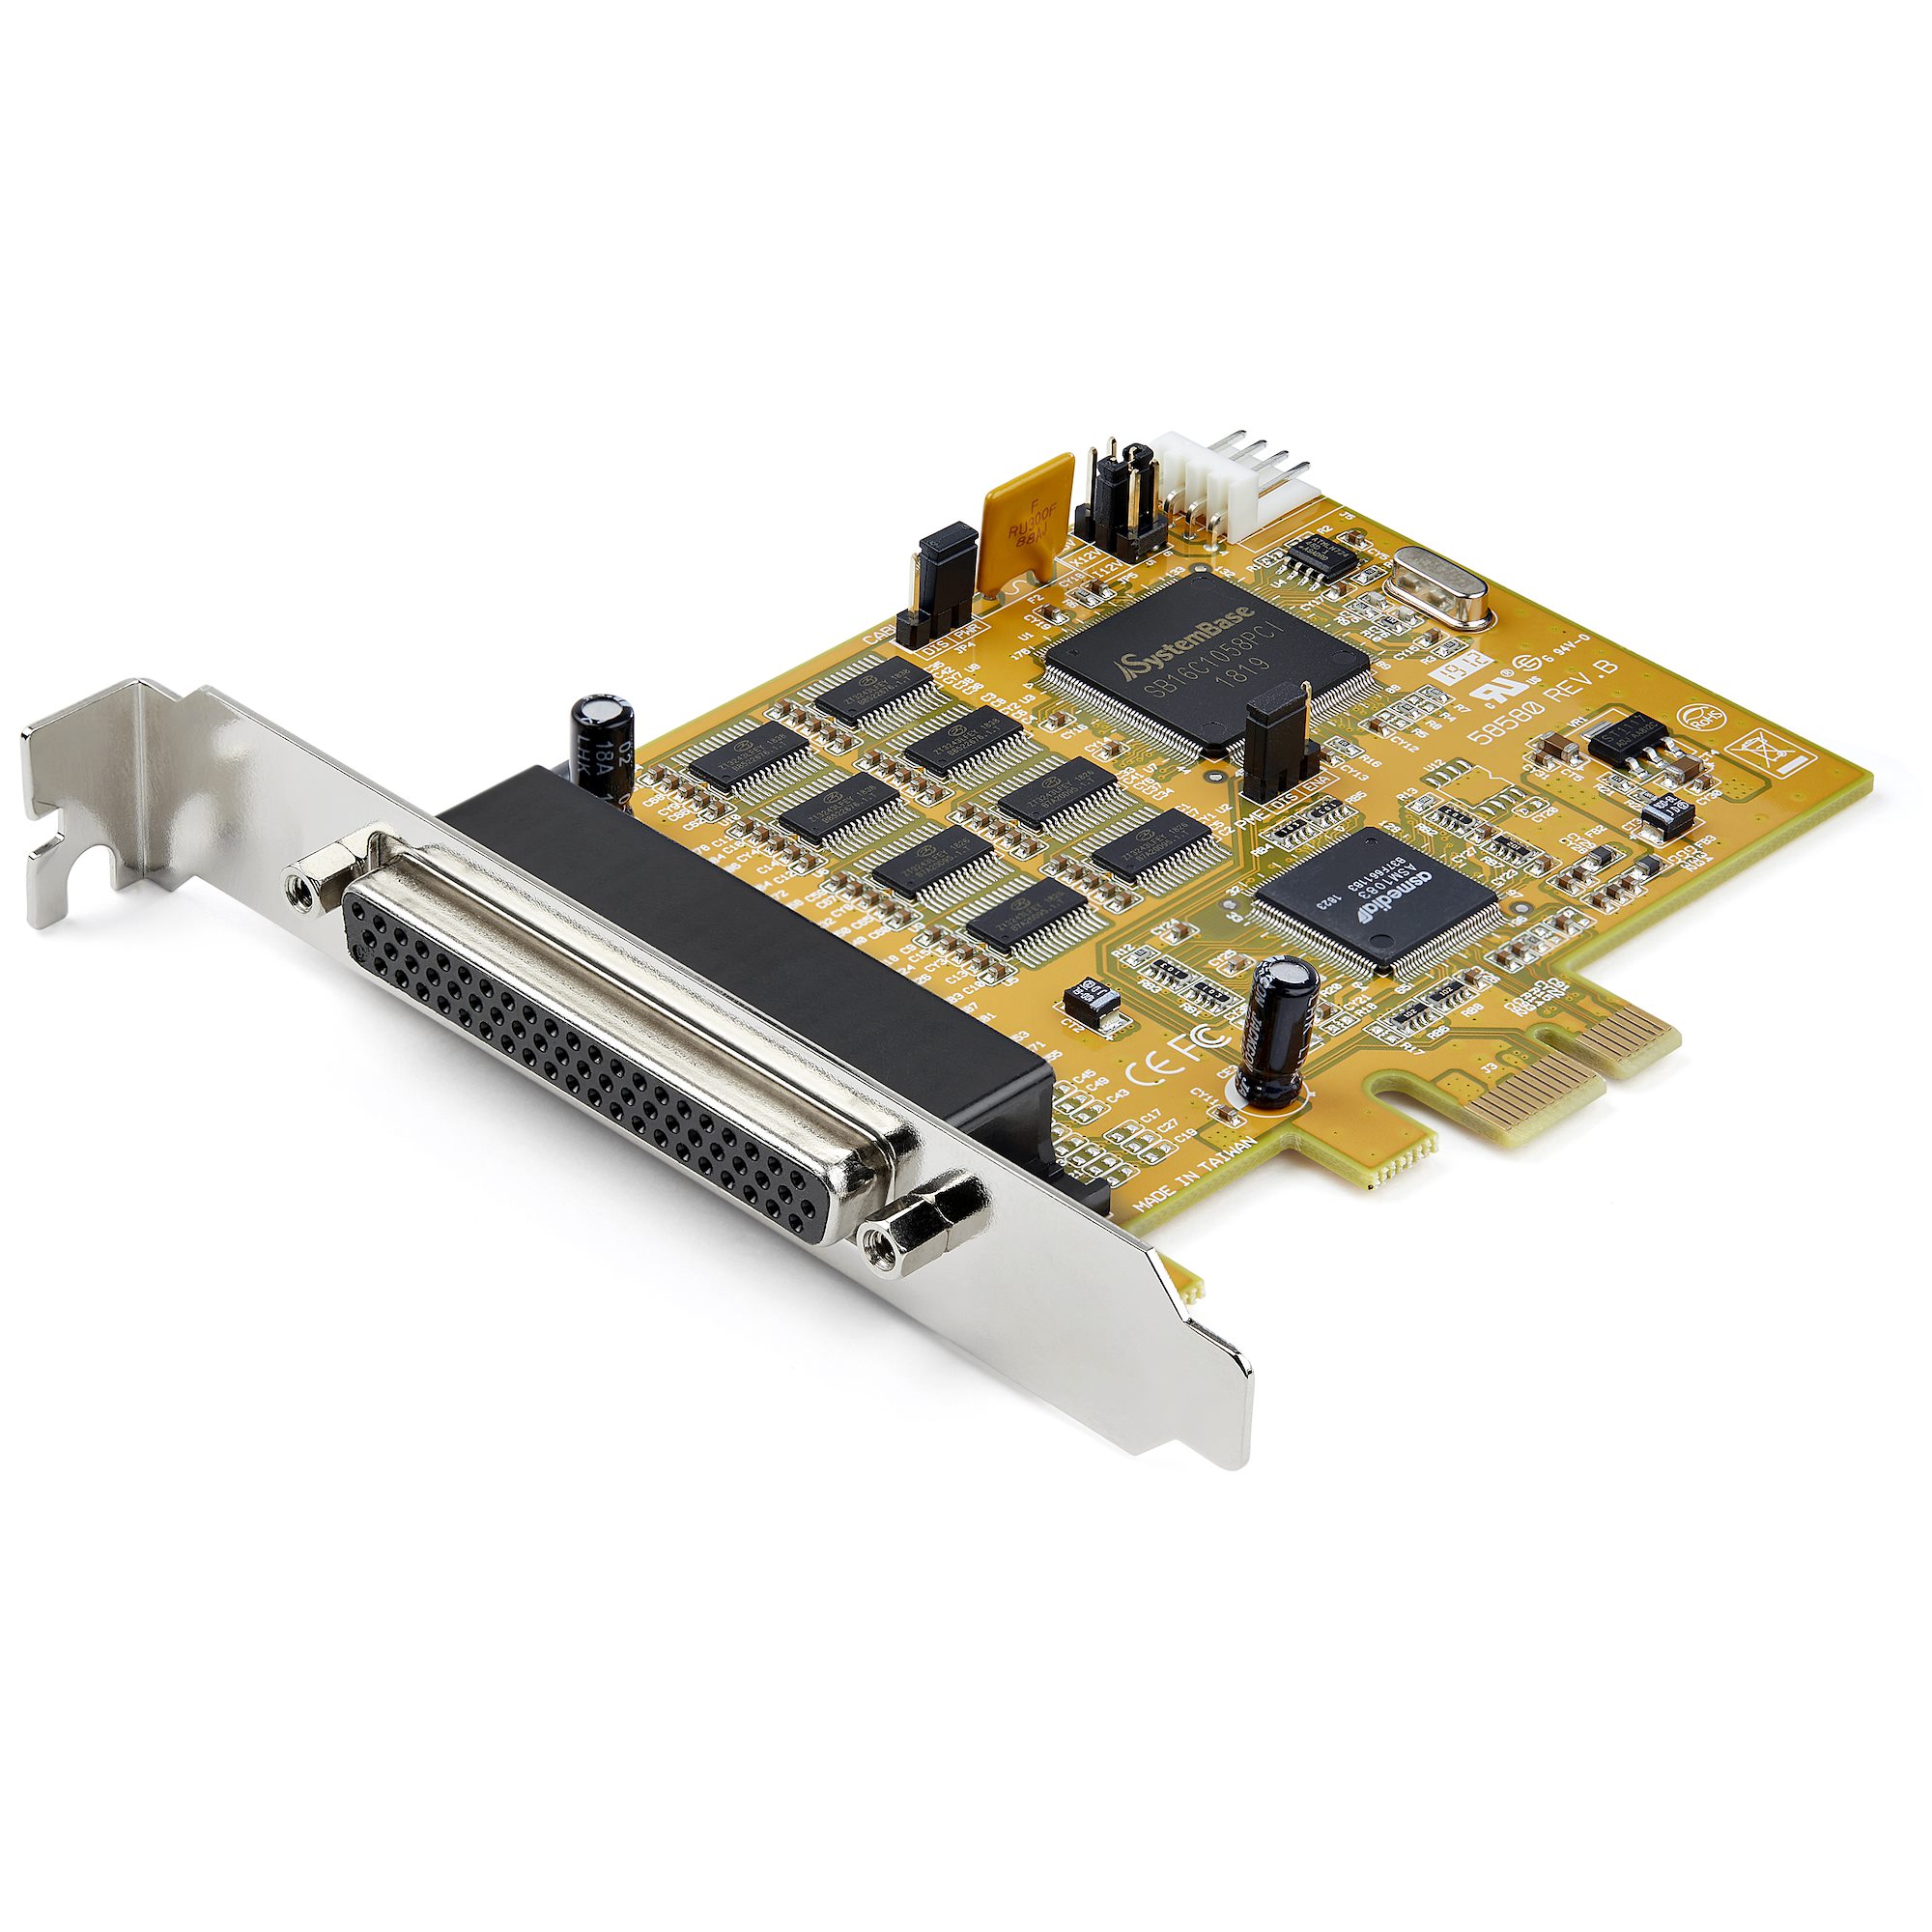 シリアル8ポート増設PCI Expressインターフェースカード／16C1050 UART内蔵／8x RS232C PCIe拡張カード／15kV  ESD保護／Windows & Linux対応